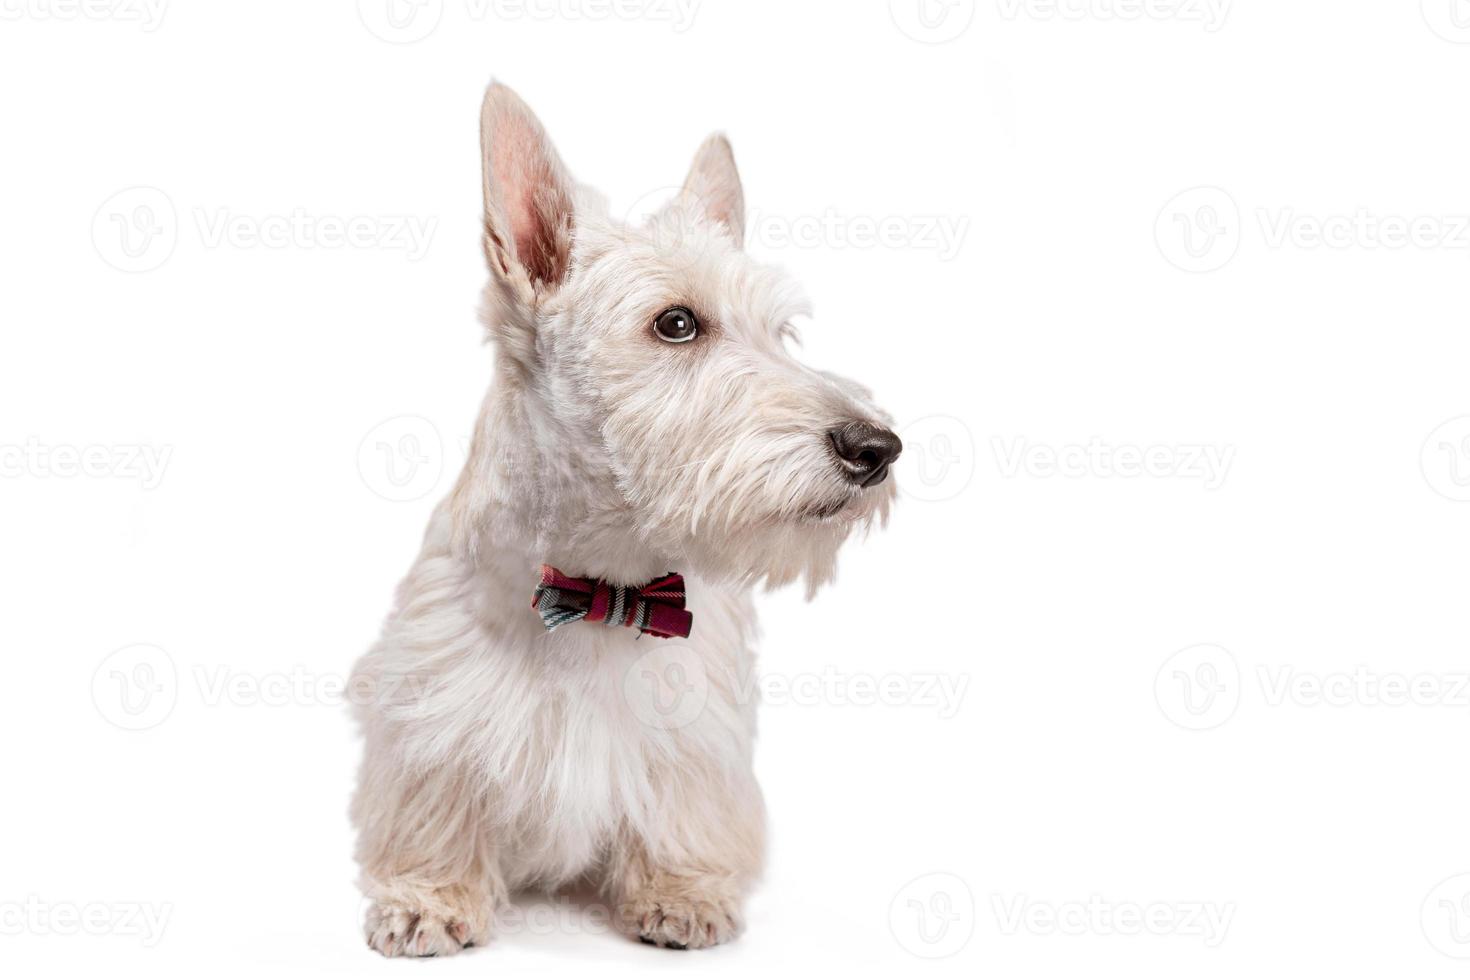 witte Schotse terriër pup op een lichte achtergrond foto